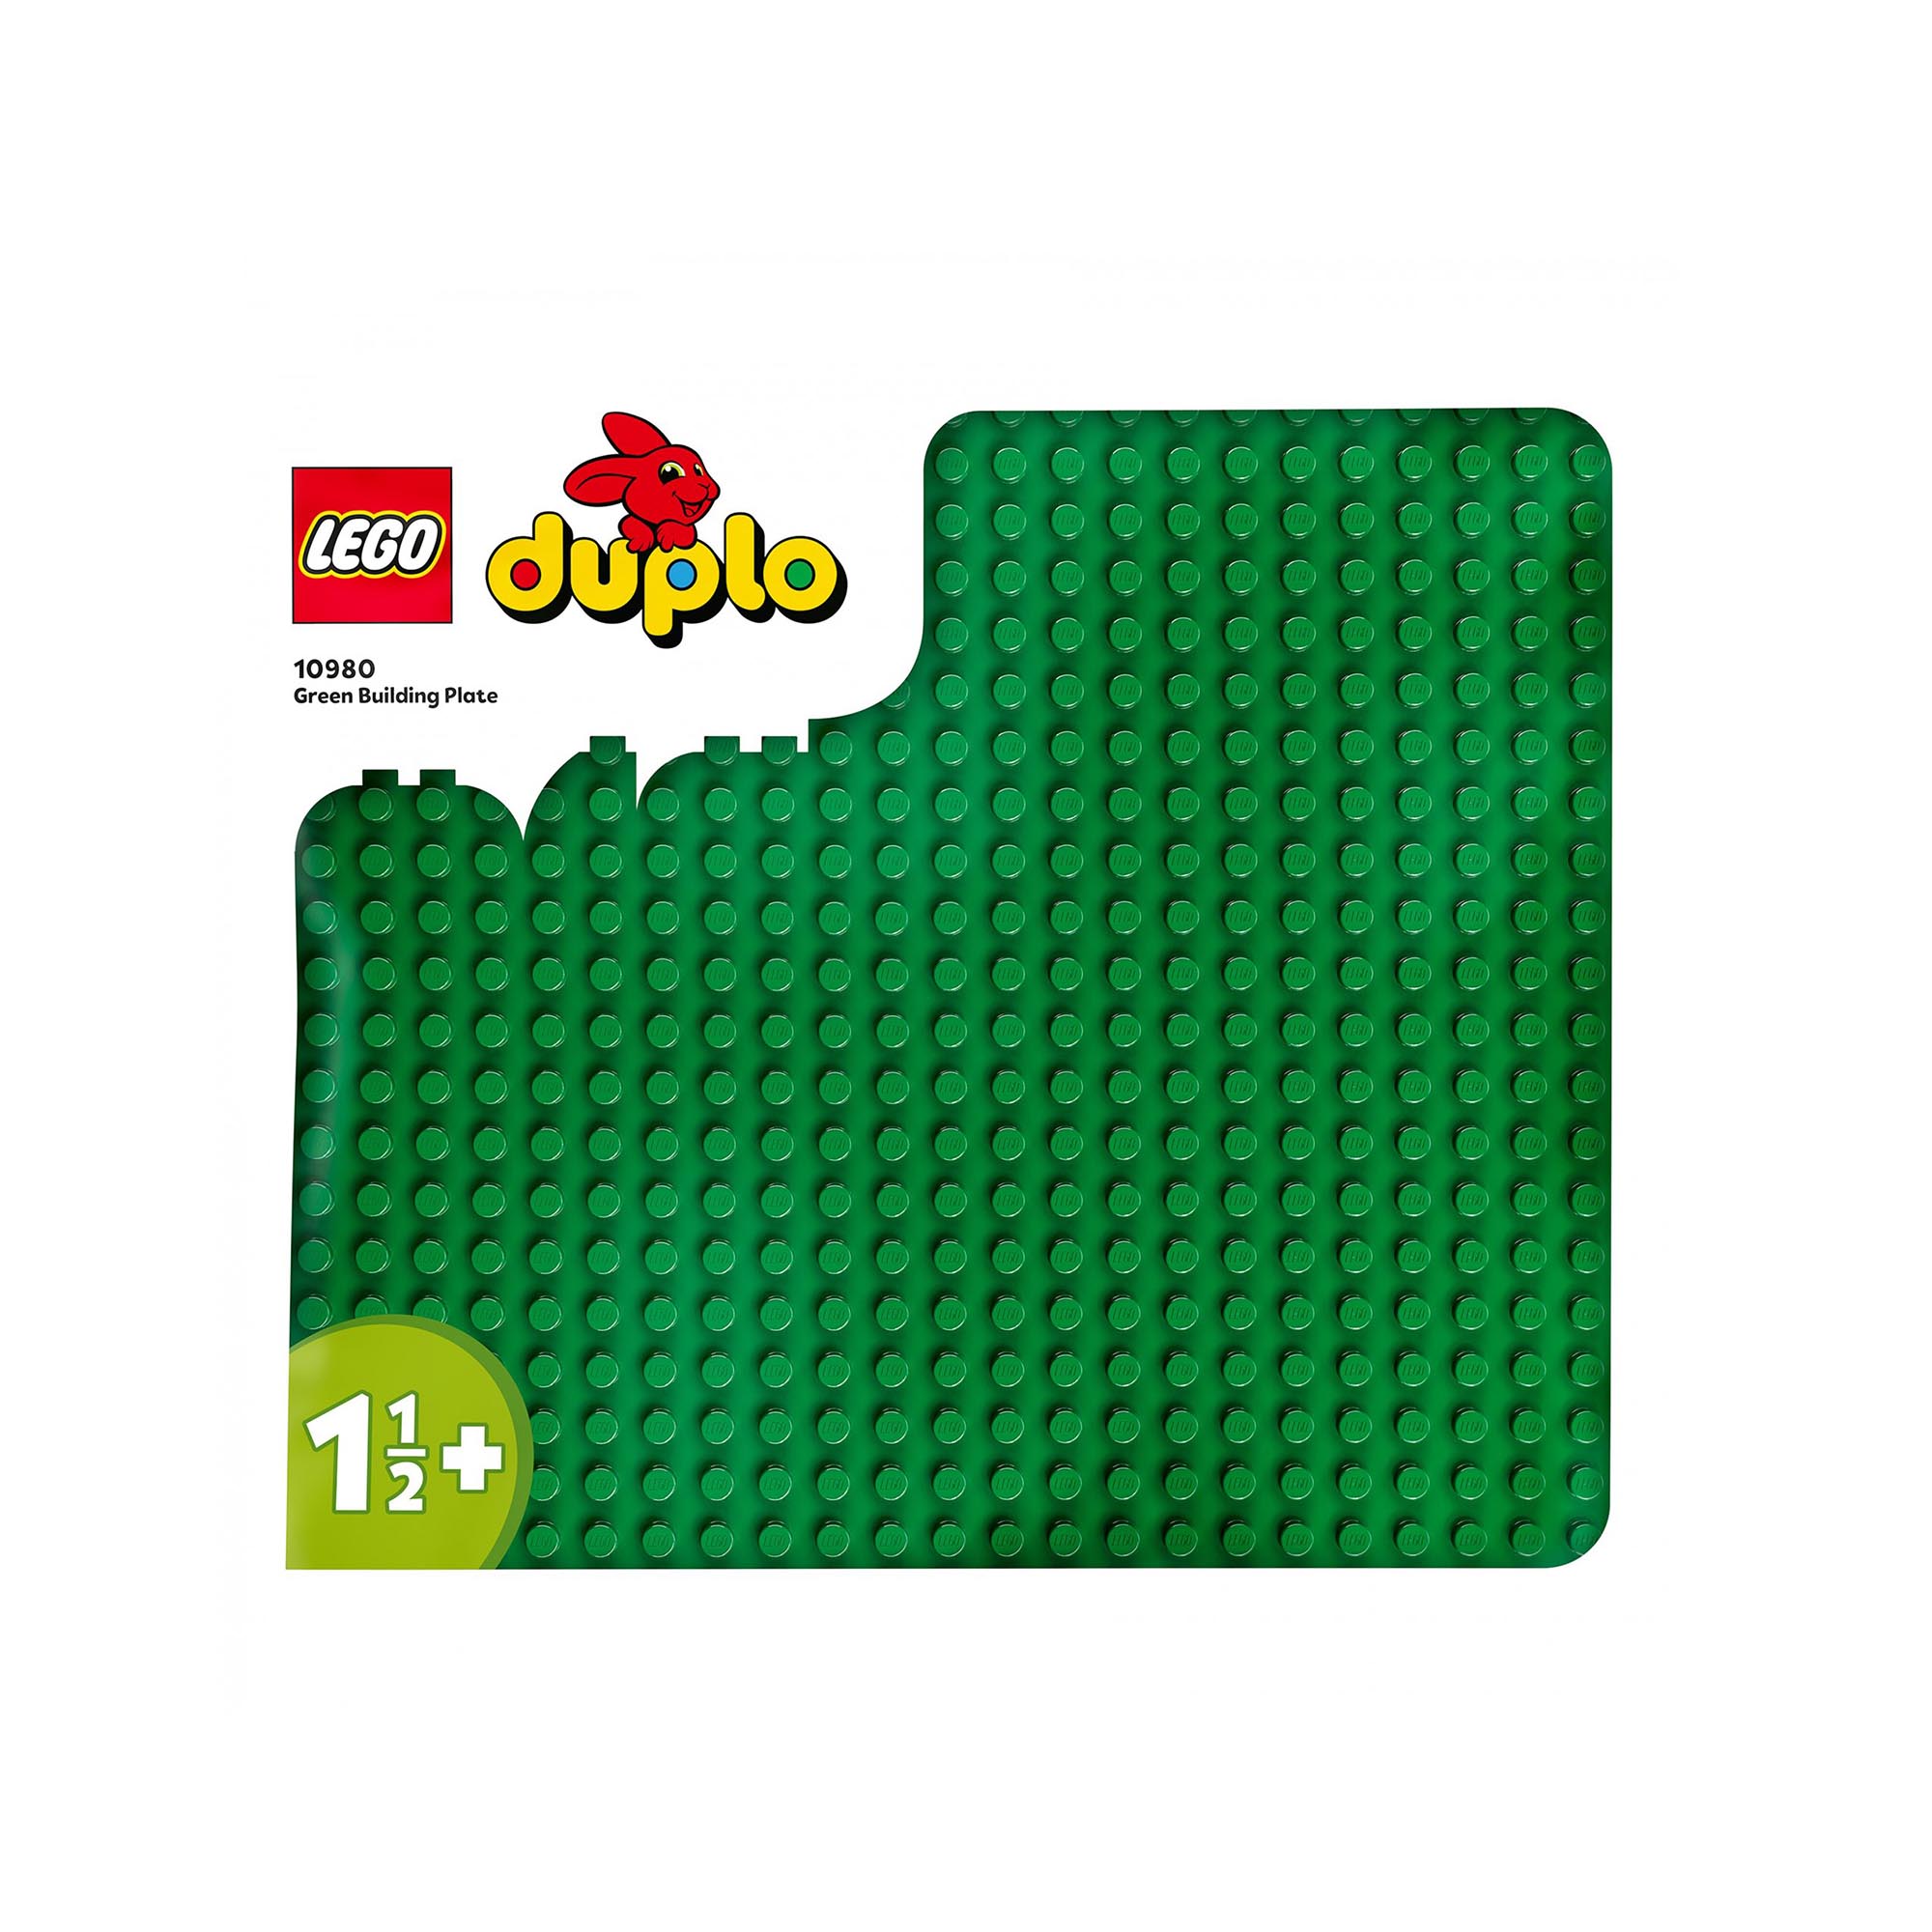 LEGO DUPLO Base Verde, Tavola Classica per Mattoncini, Piattaforma Giocattolo, S 10980, , large